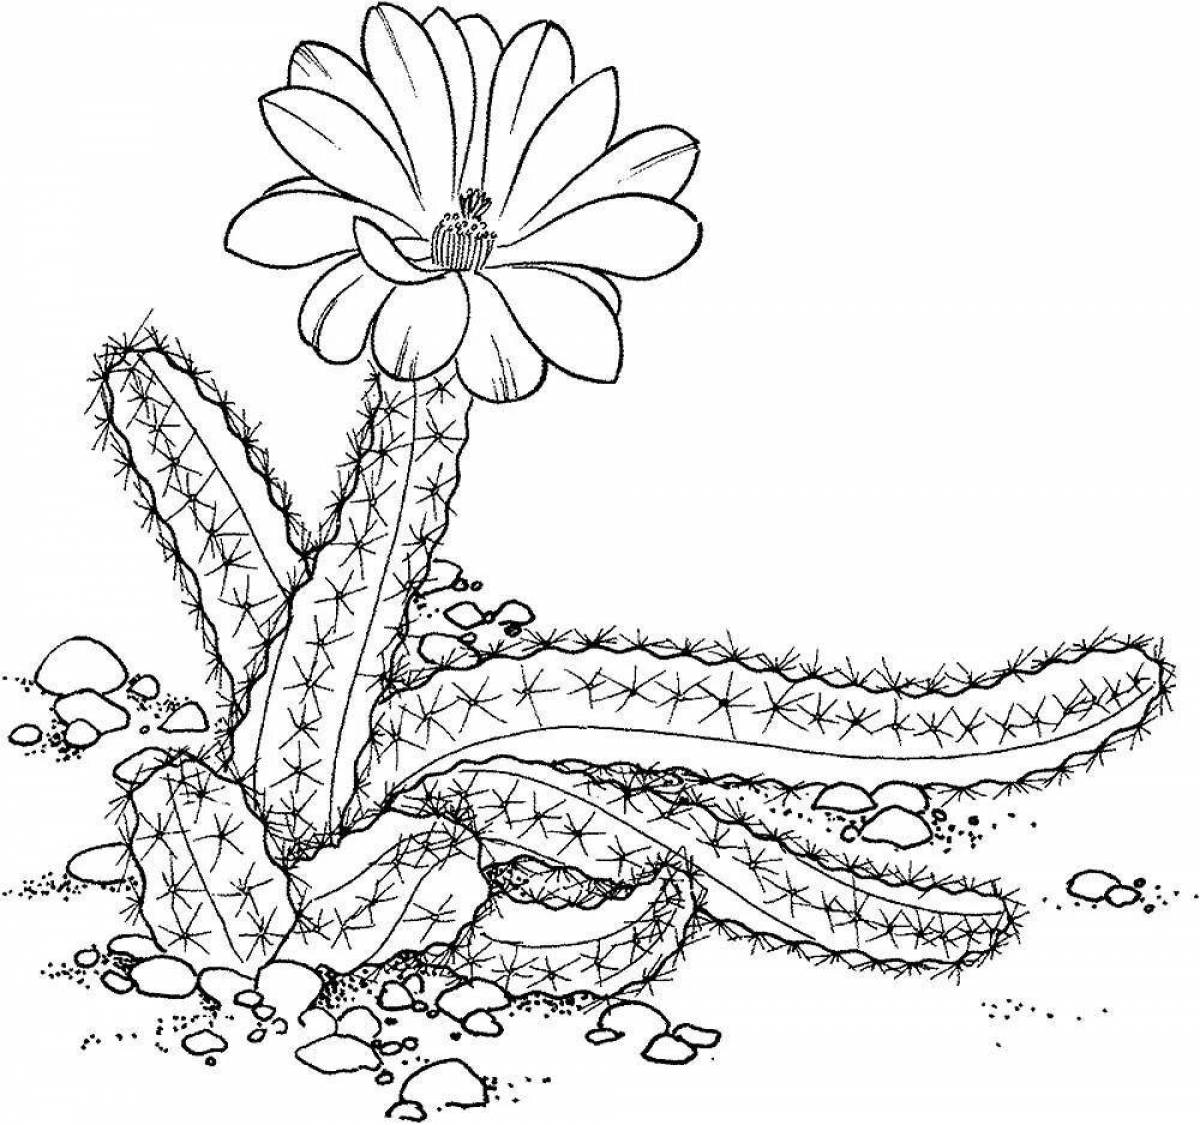 Children's coloring cactus